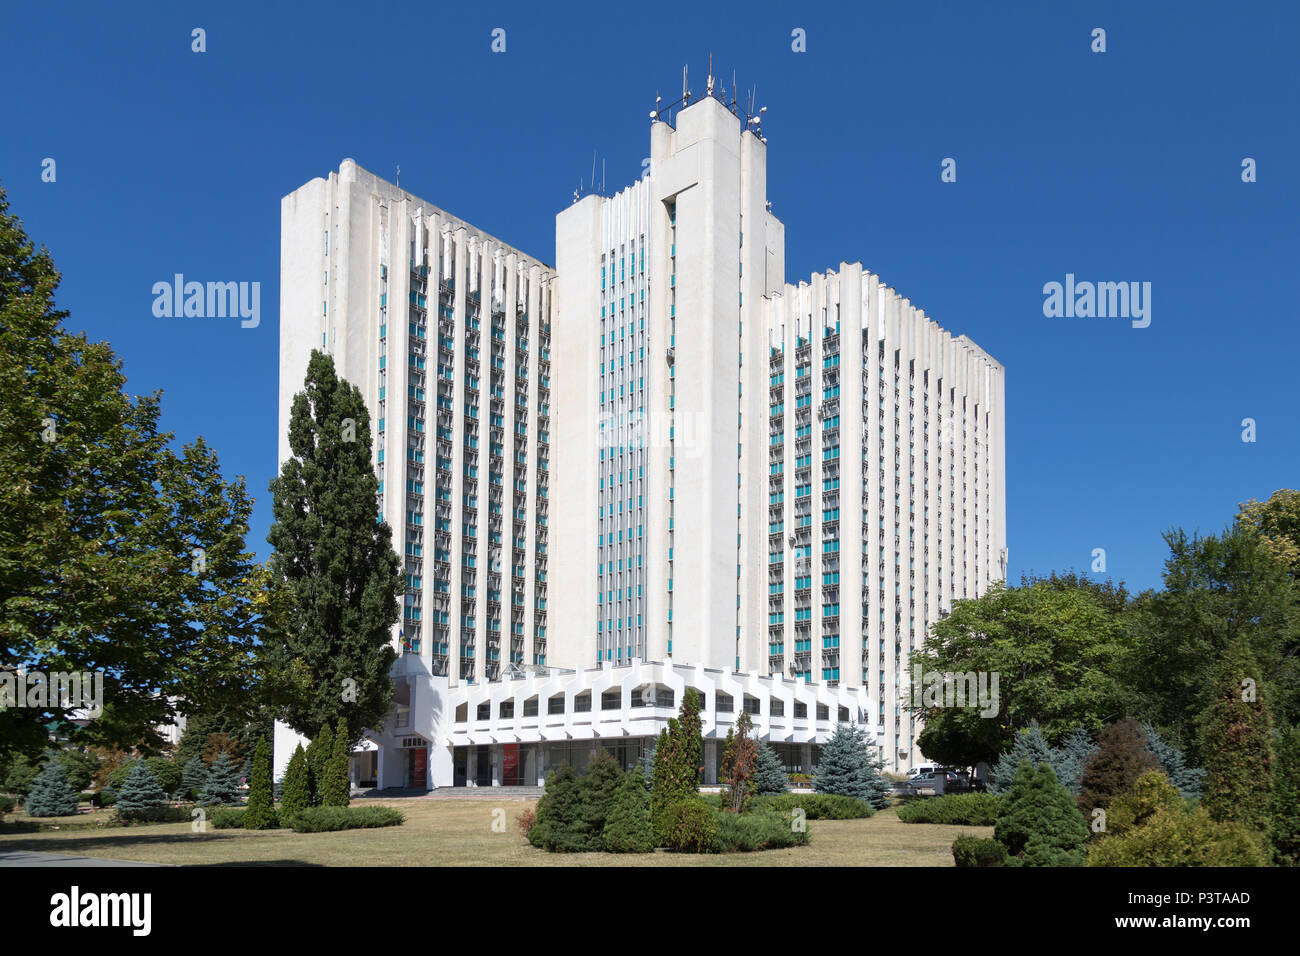 Republic of Moldova, Chisinau - skyscraper housing several ministries of the Republic of Moldova Stock Photo